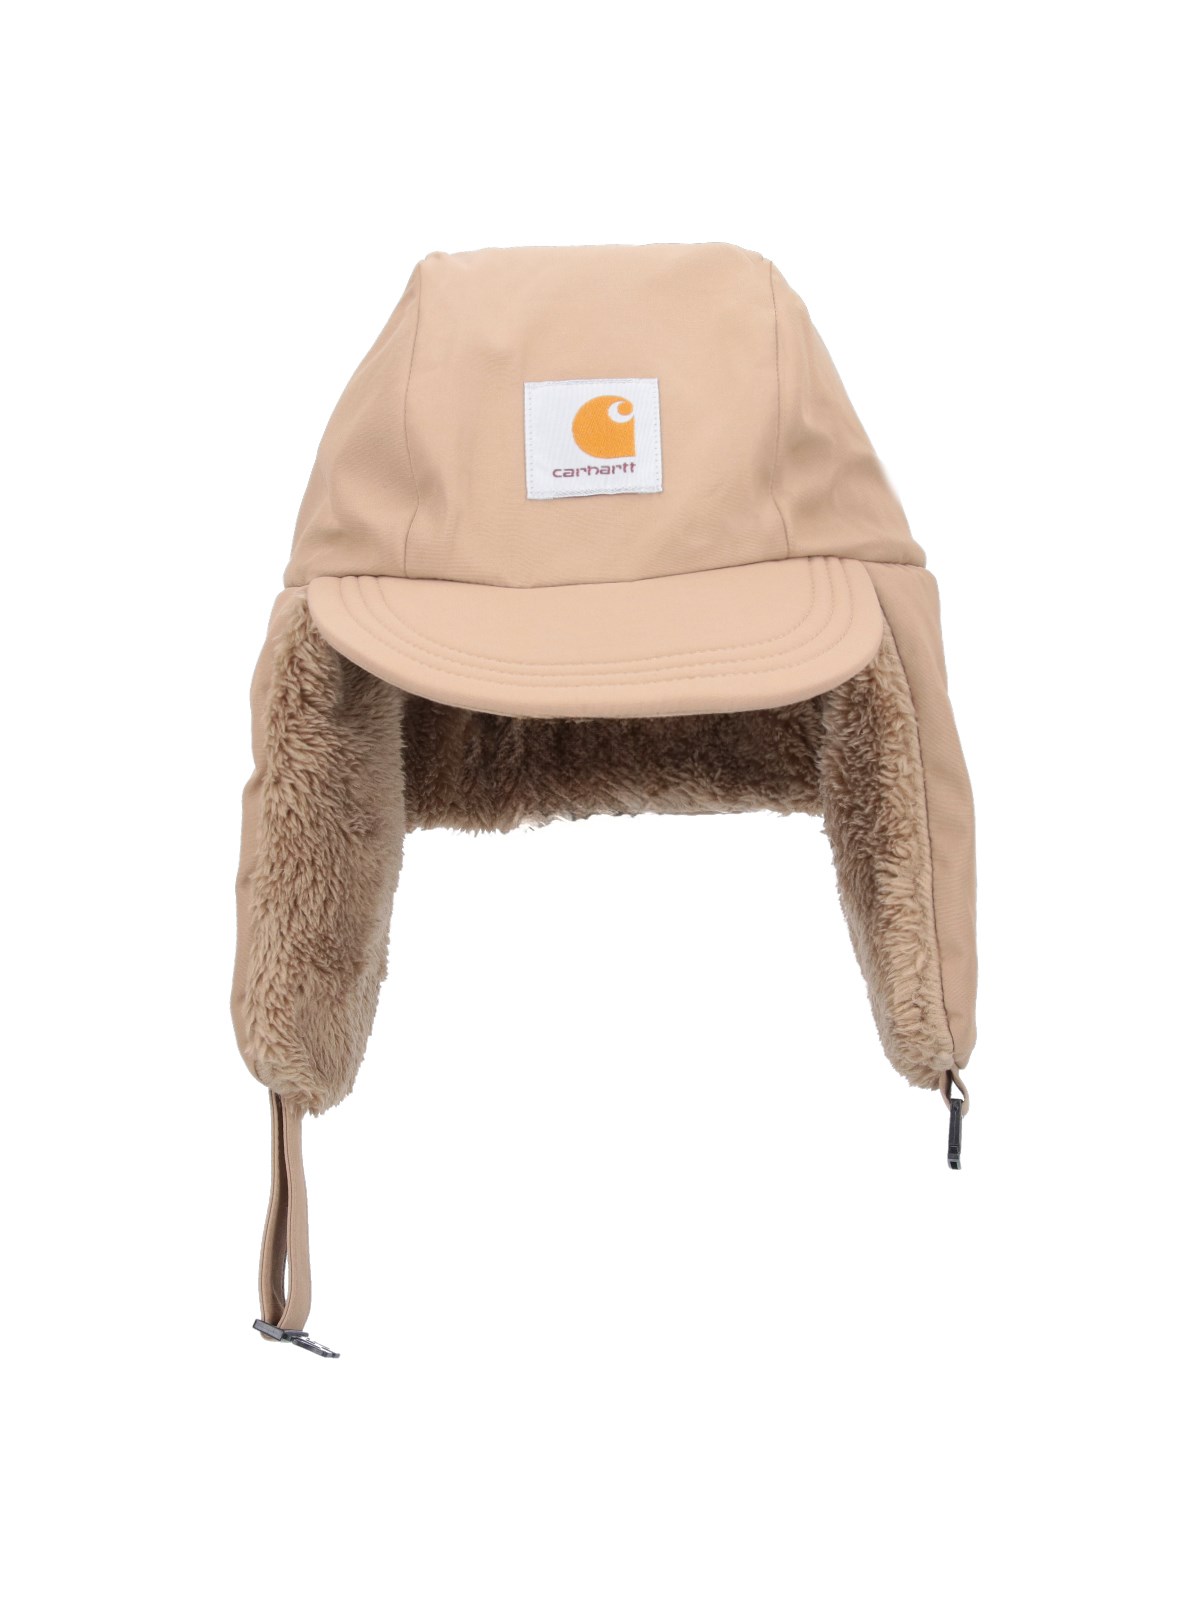 Carhartt "alberta" Hat In Brown